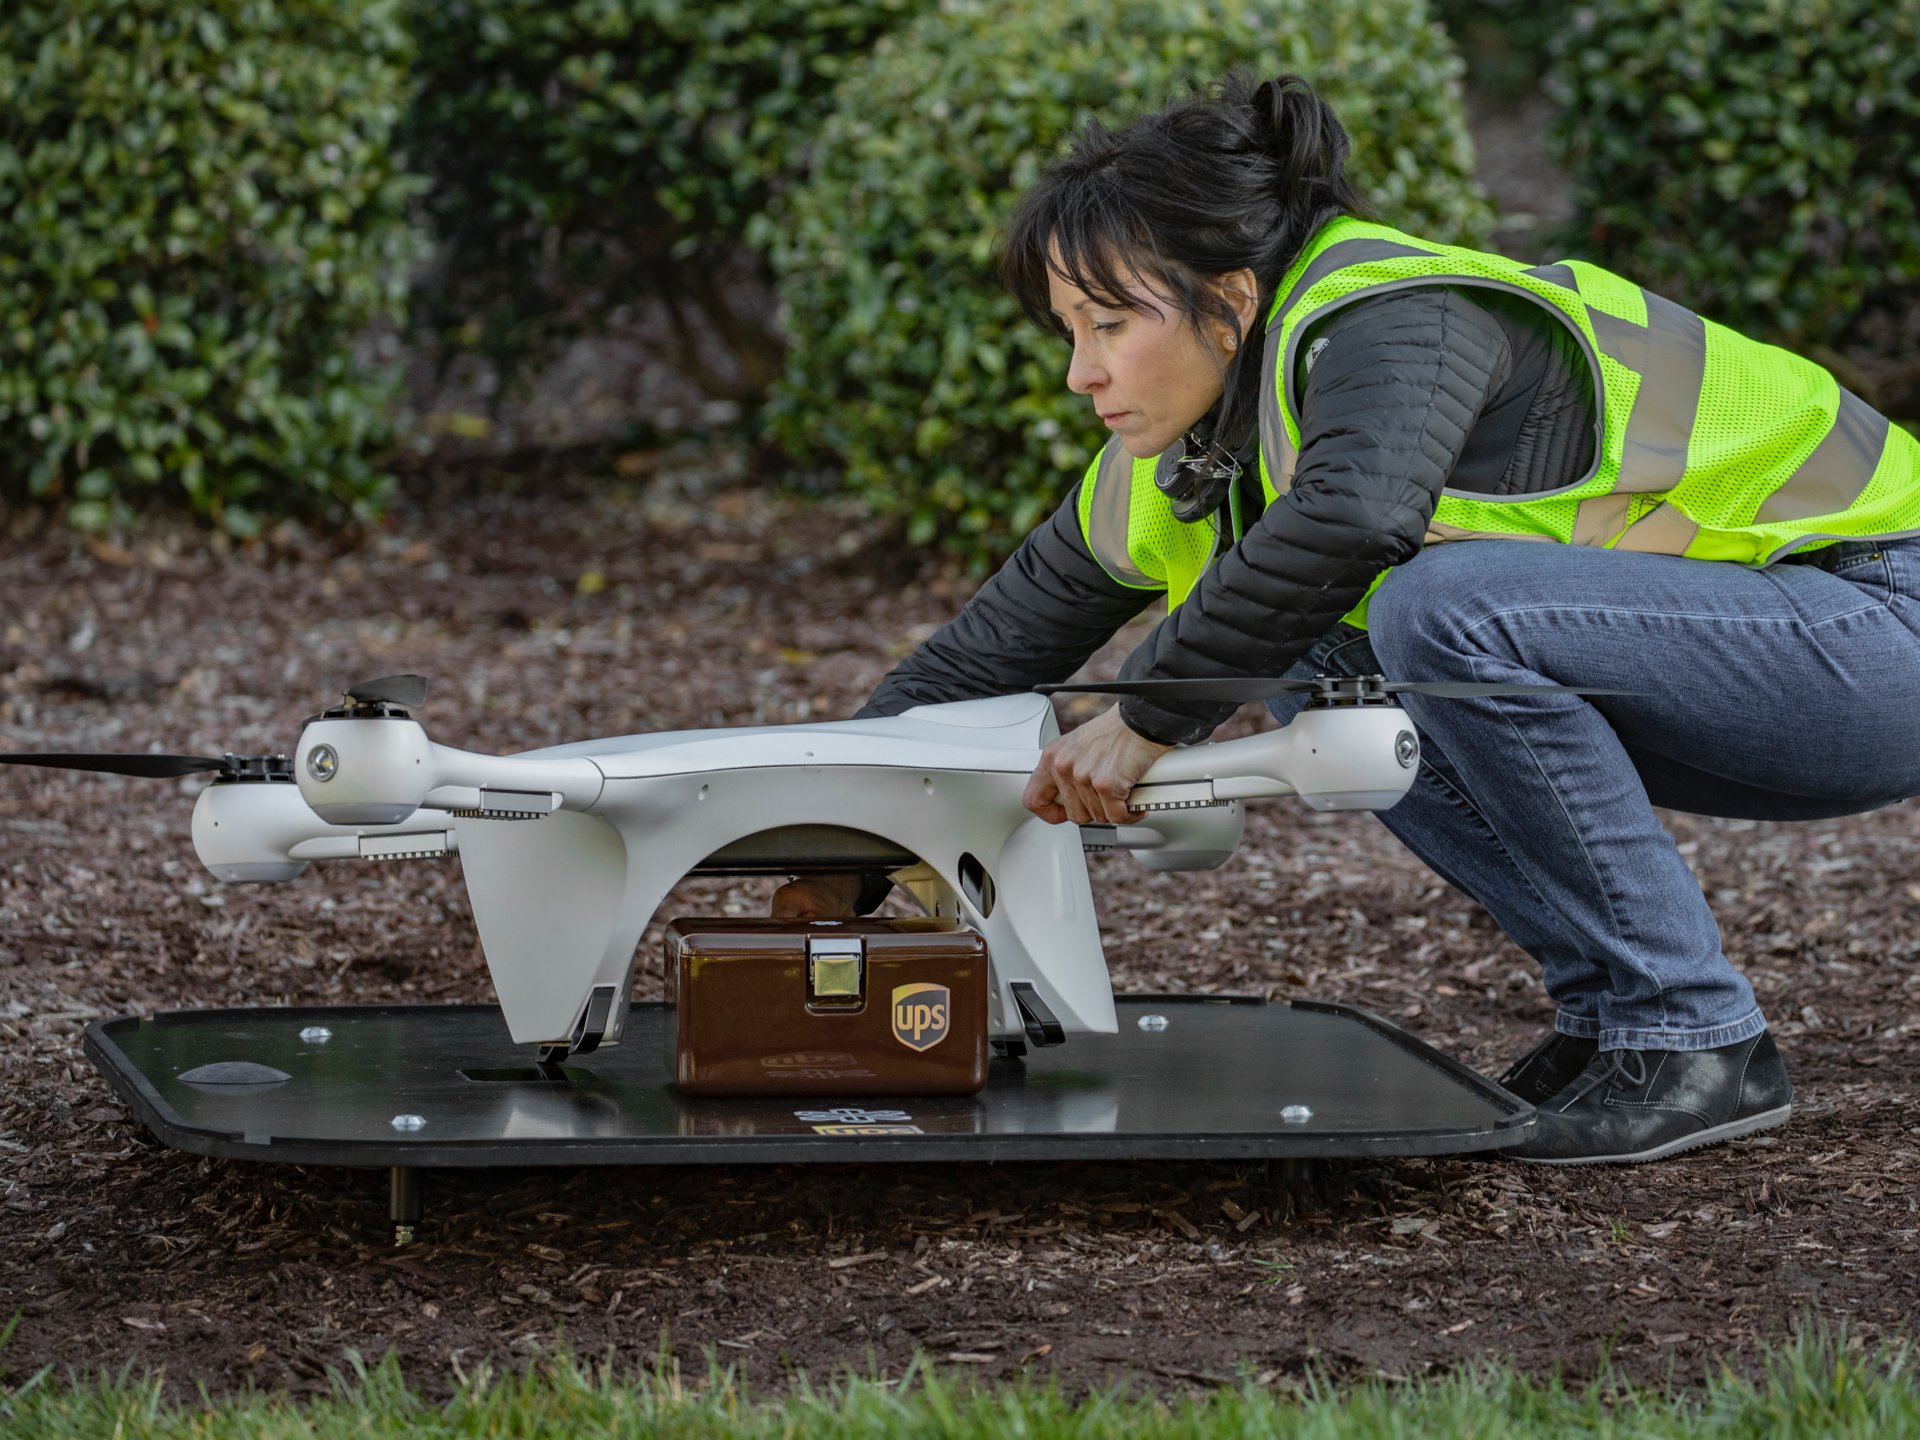 UPS spustila prepravu laboratórnych vzoriek prostredníctvom dronov